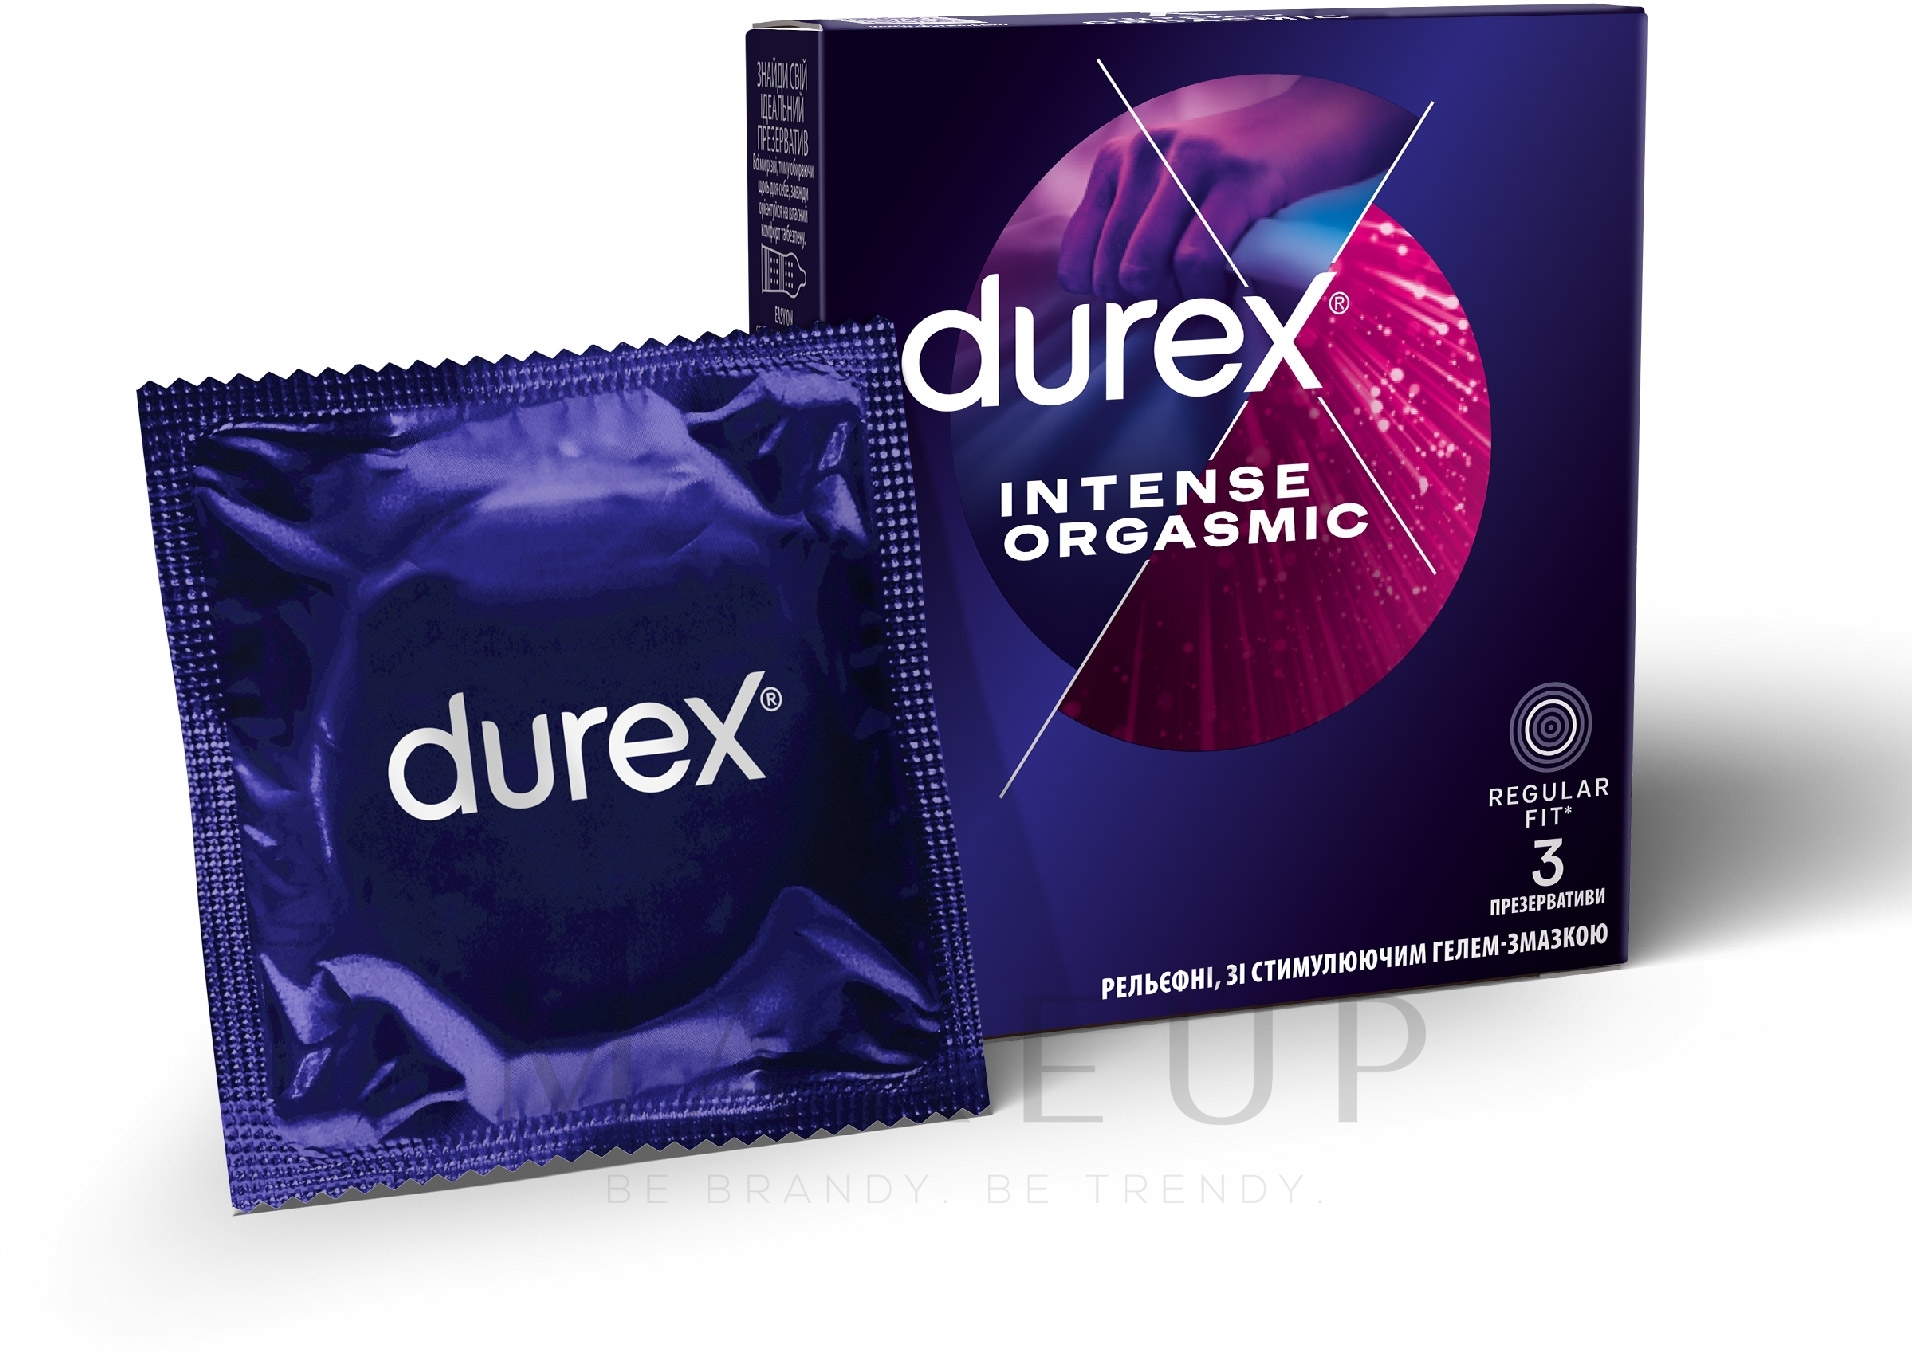 Gerippte und genoppte Kondome mit zusätzlichem Desirex-Gel befeuchtet 3 St. - Durex Intense Orgasmic — Foto 3 St.